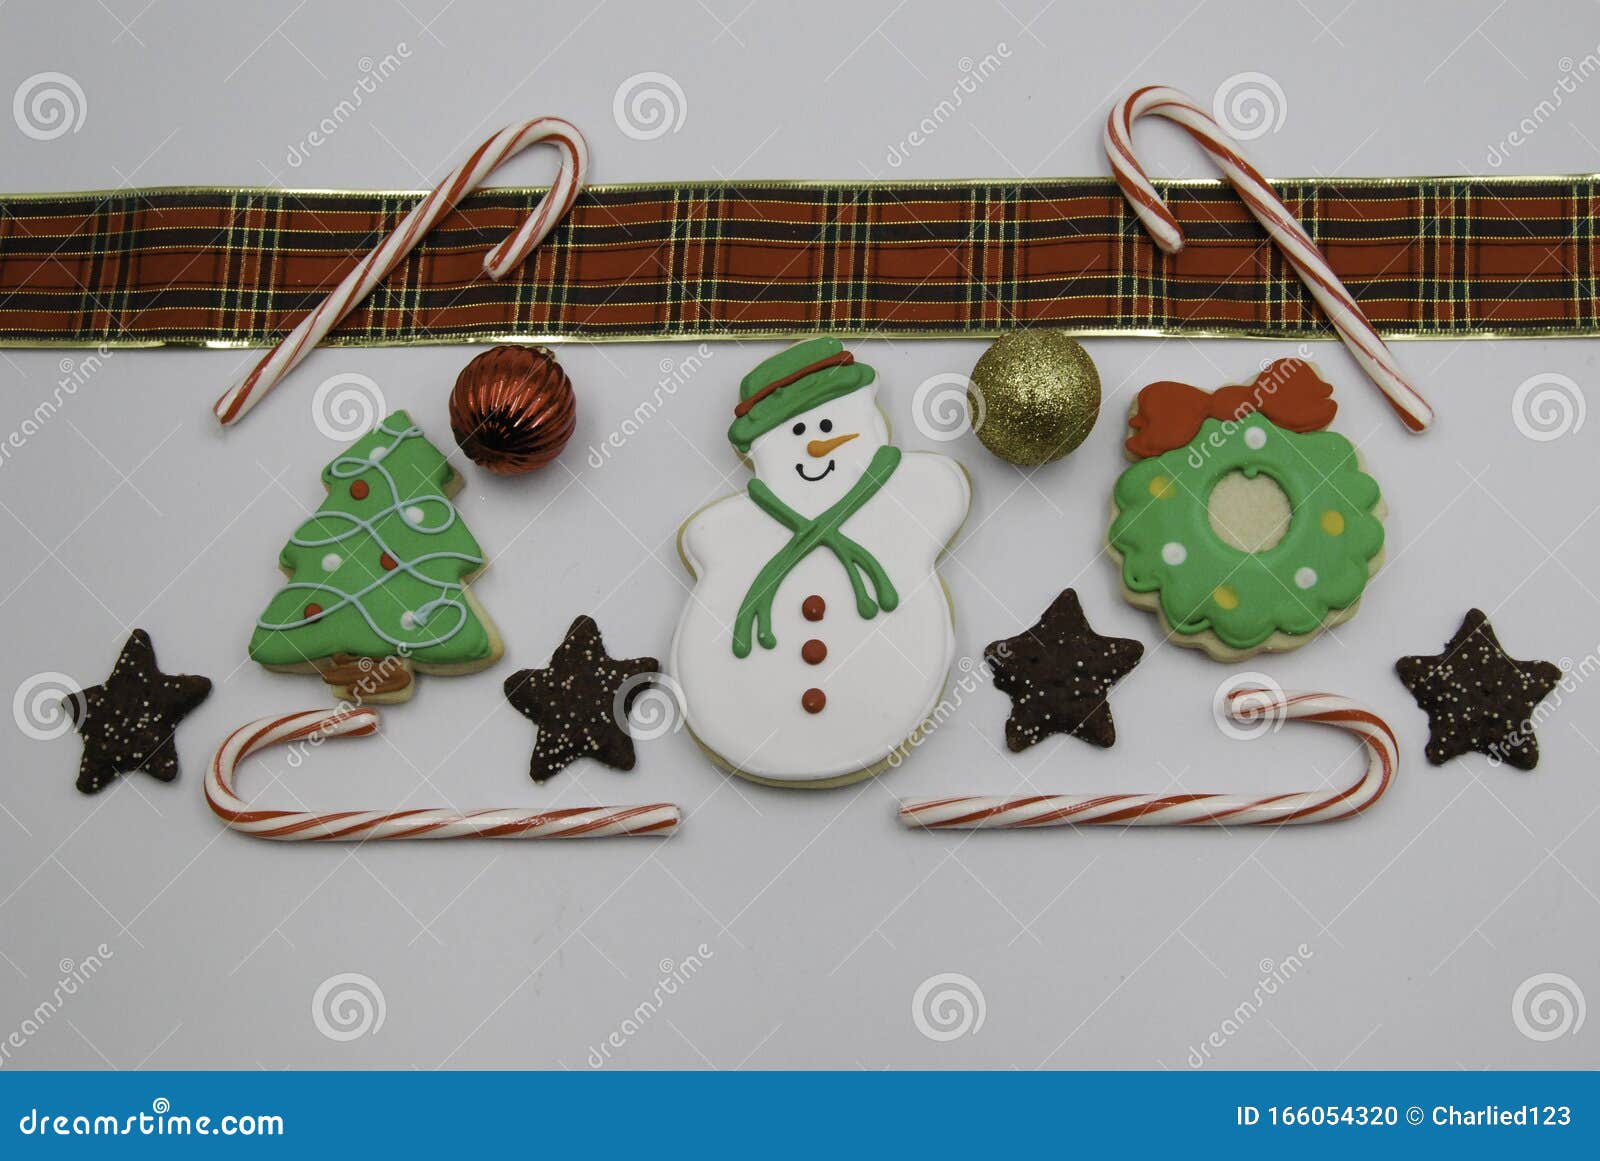 Cookies Navideños Decorados Con Latas De Caramelo Y Decoraciones Navideñas,  En Blanco Foto de archivo - Imagen de pascua, objeto: 166054320